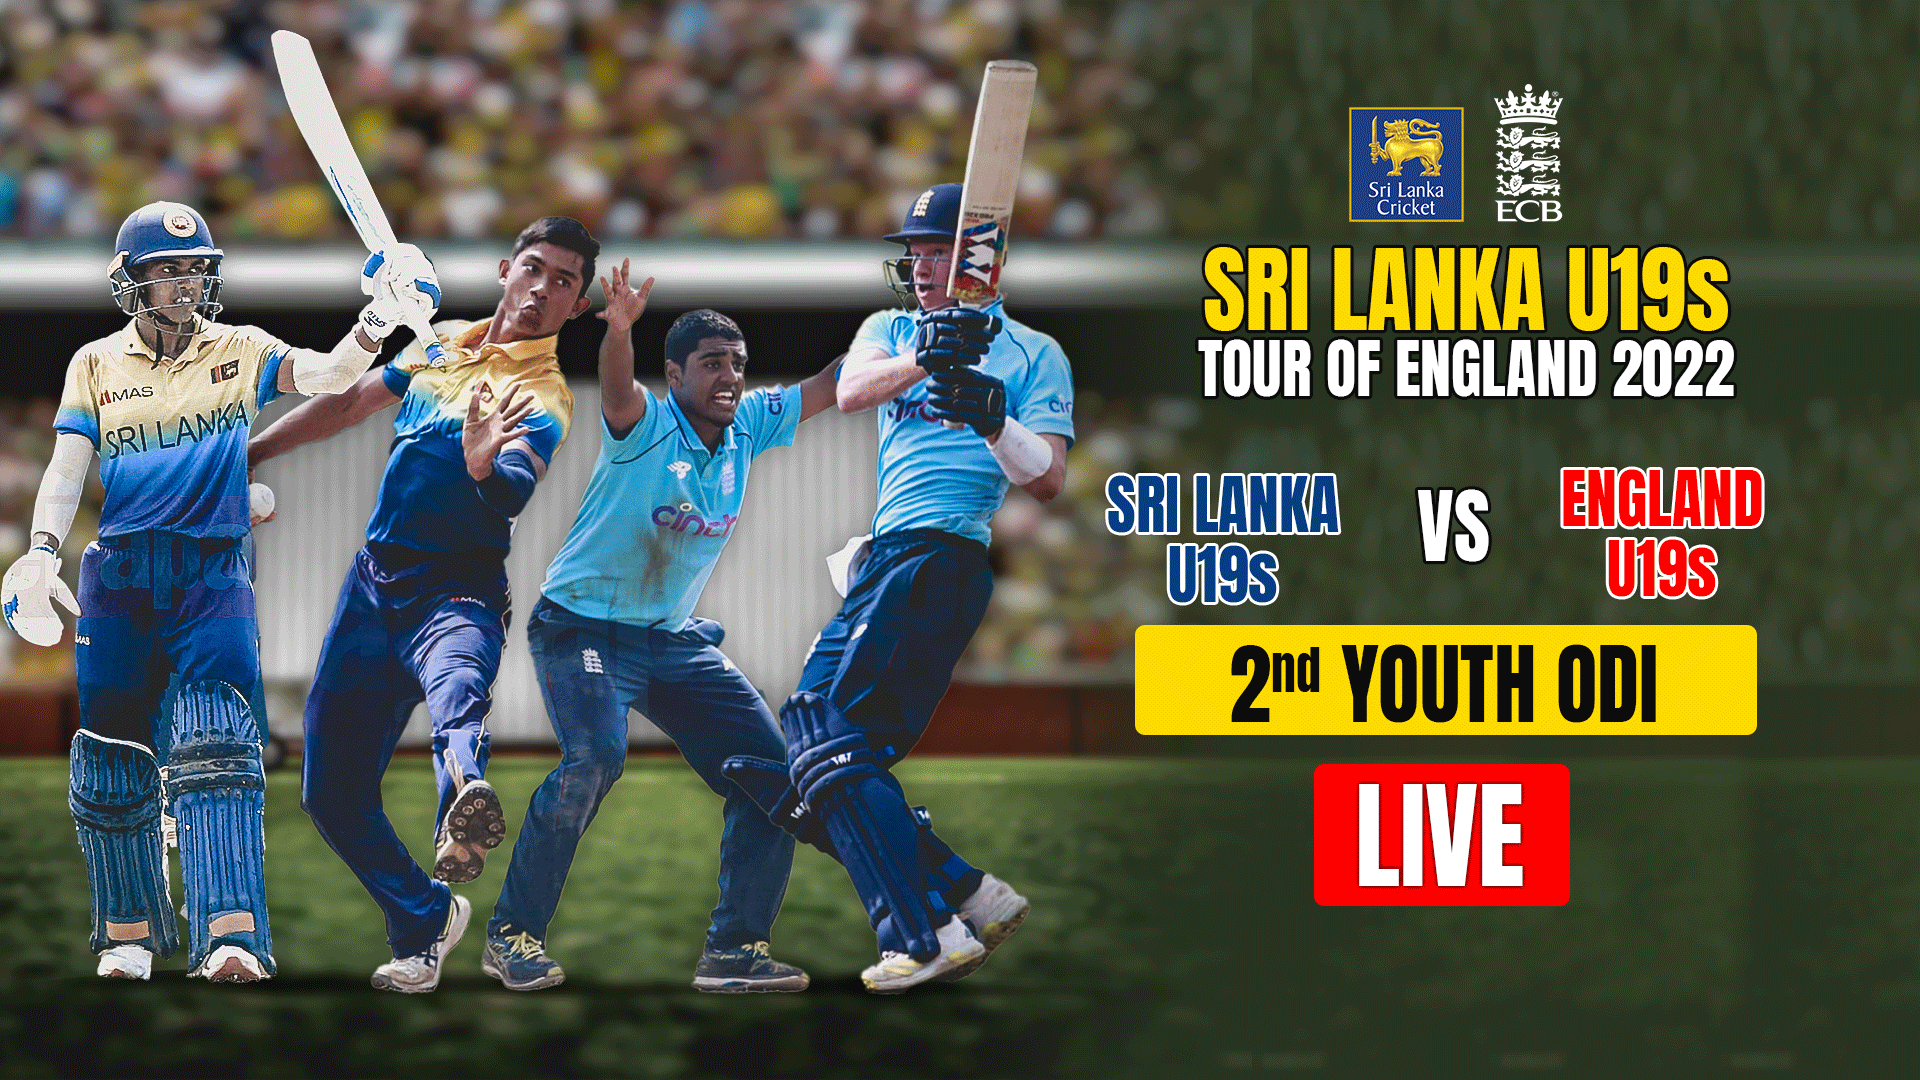 REPLAY - Sri Lanka U19 tour of England 2022